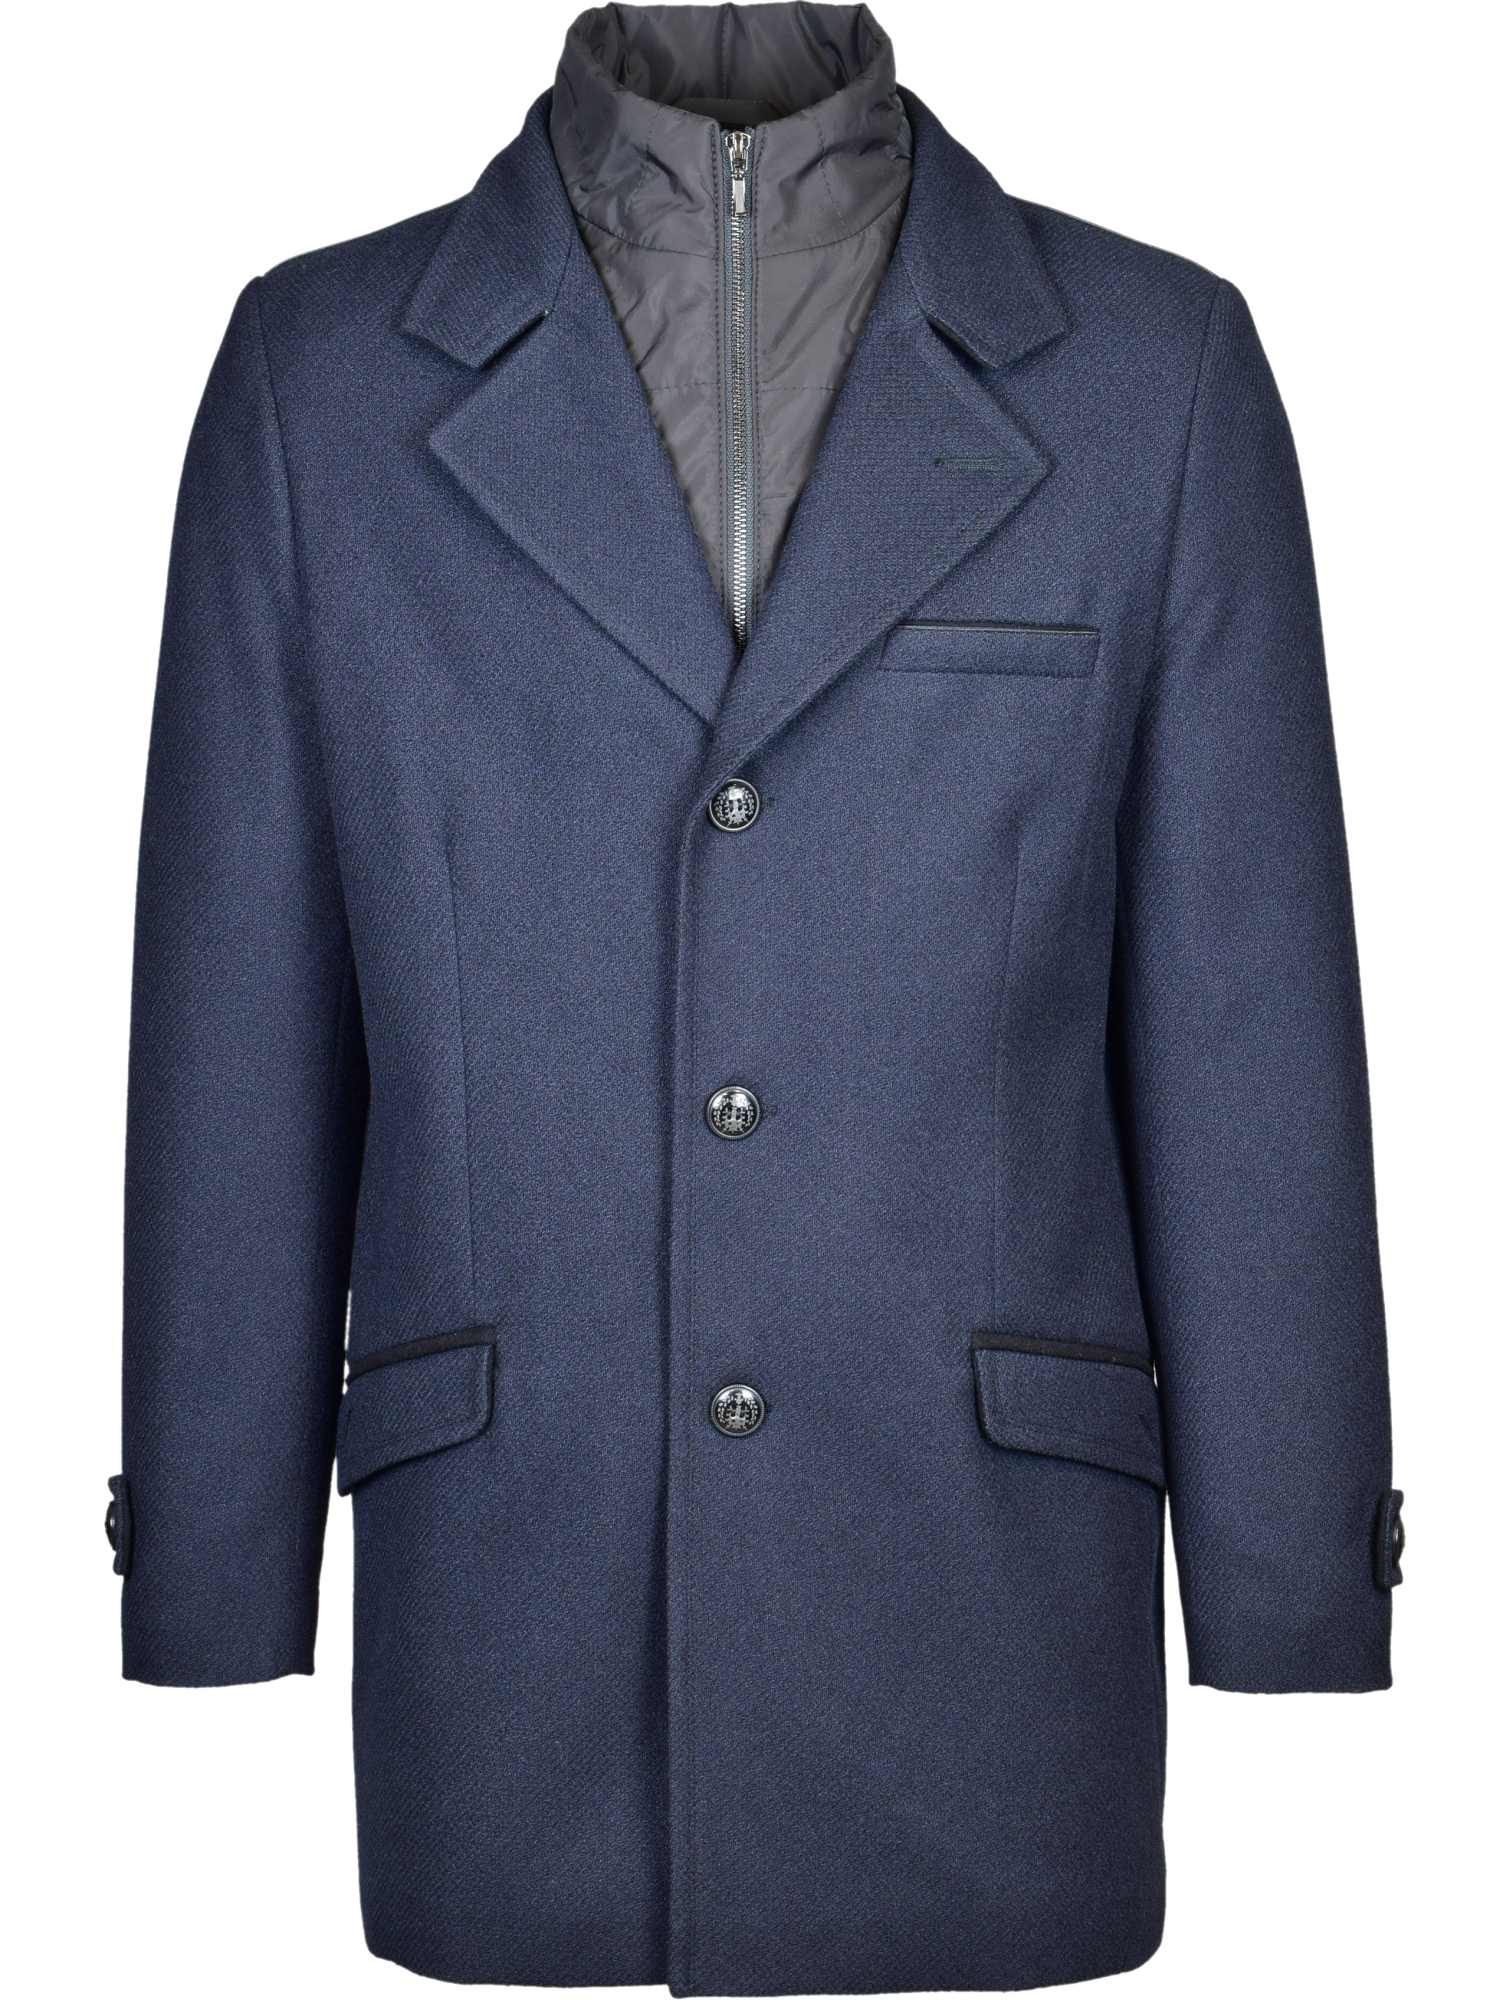 Zimný vlnený kabát modrý, P469